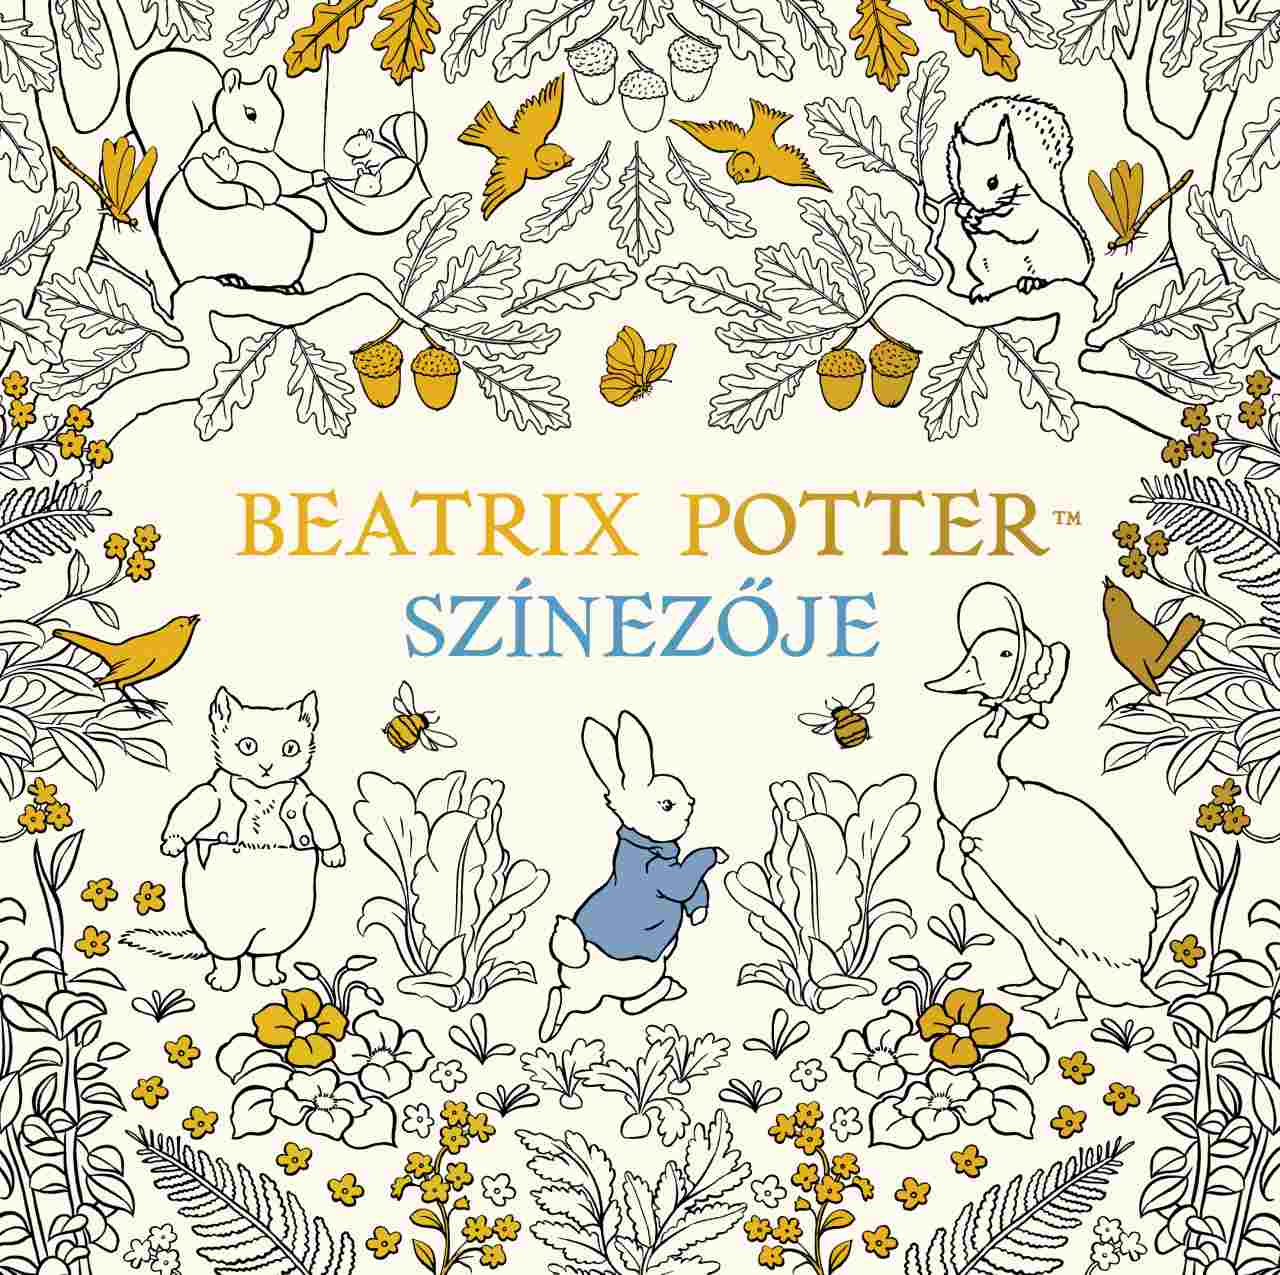 Beatrix Potter - Beatrix Potter színezője